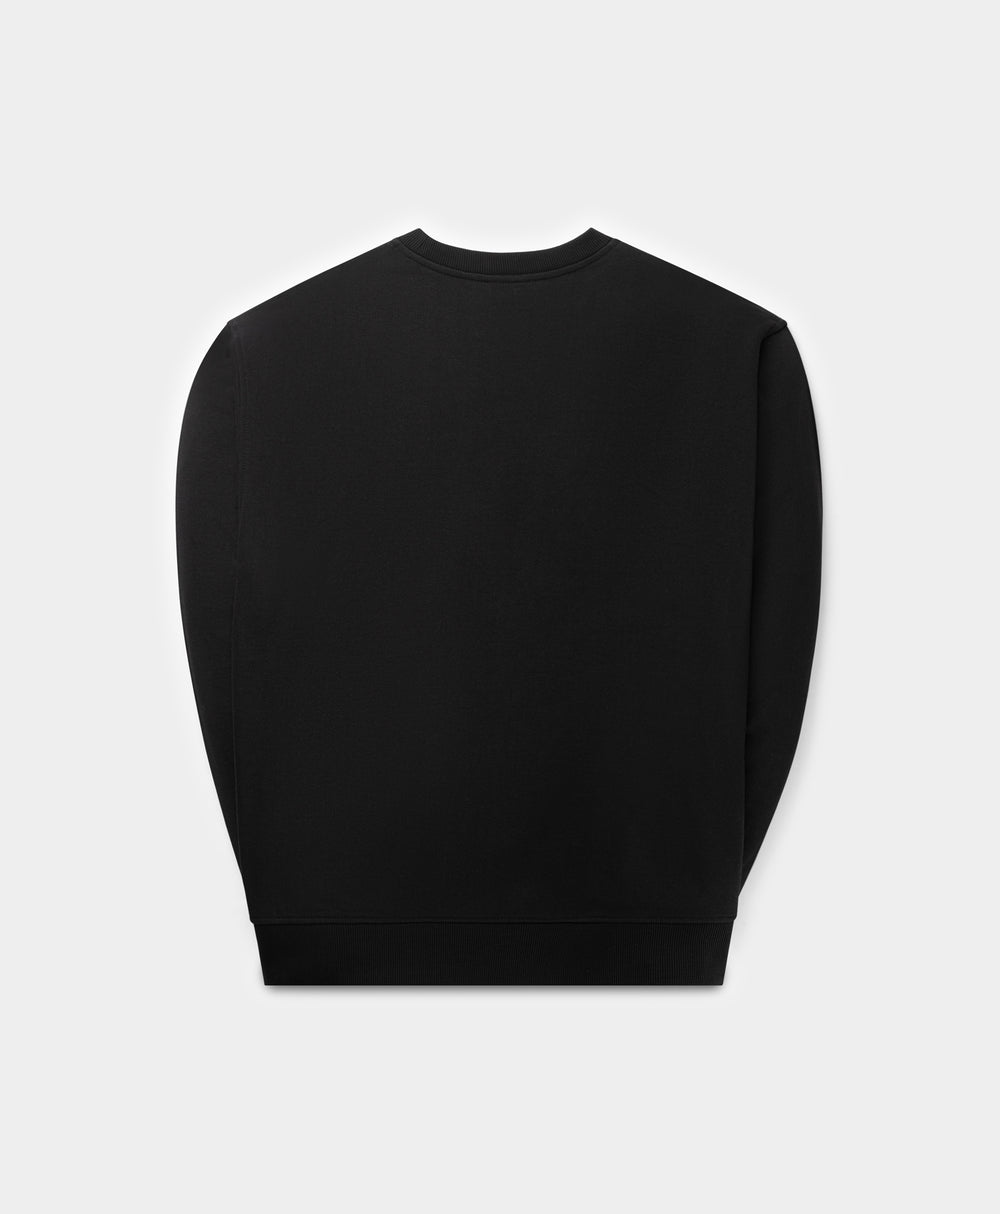 DP - Black Landscape Oversized Sweater - Packshot - Rear